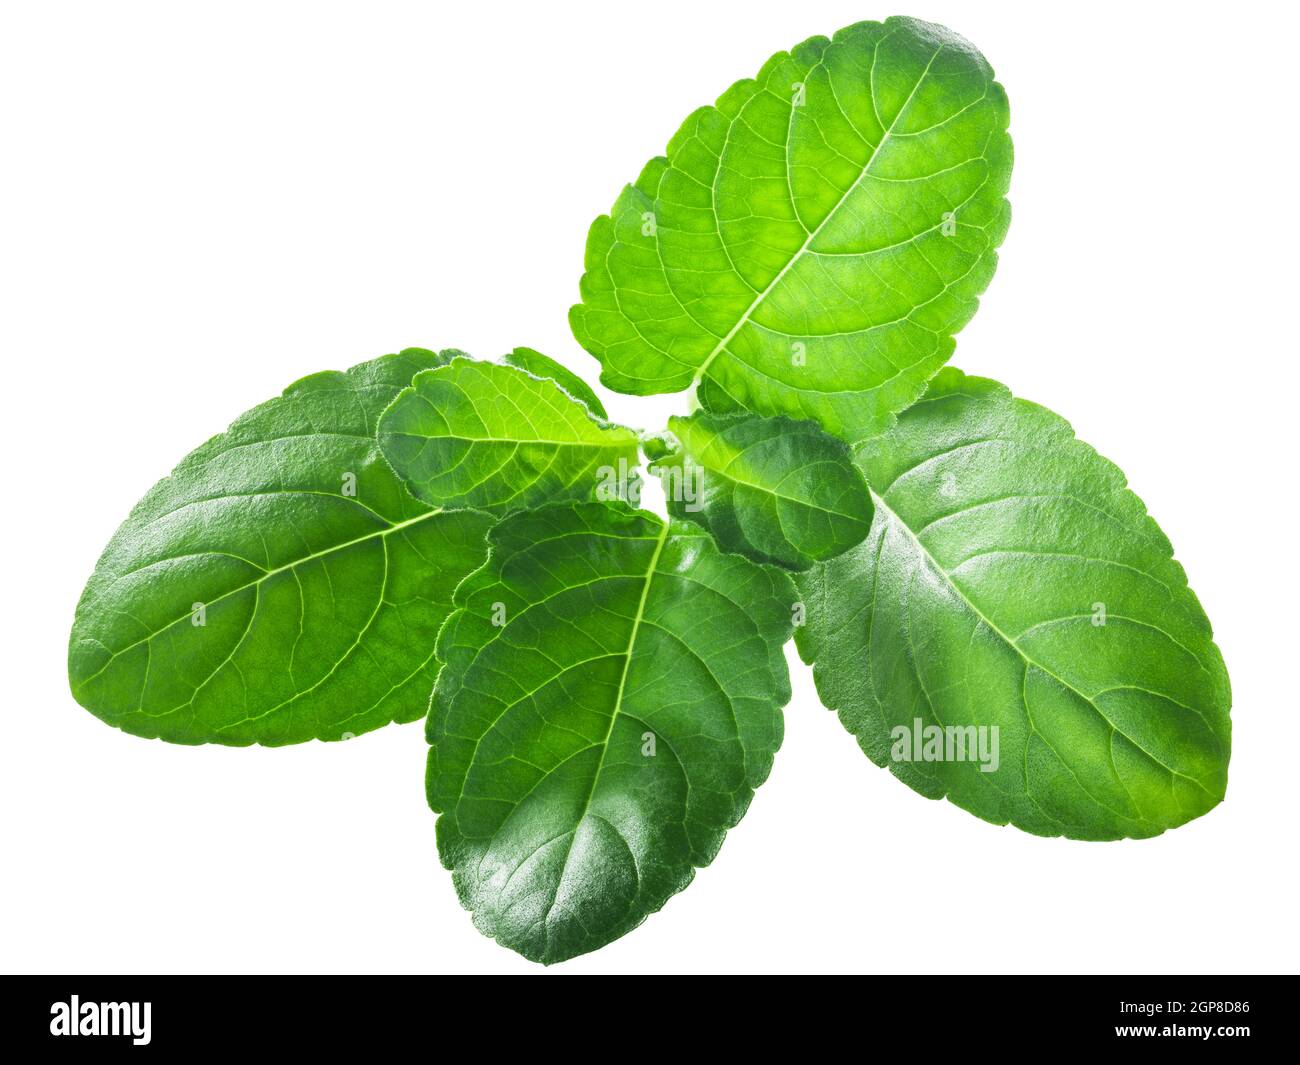 krishna tulsi leaves